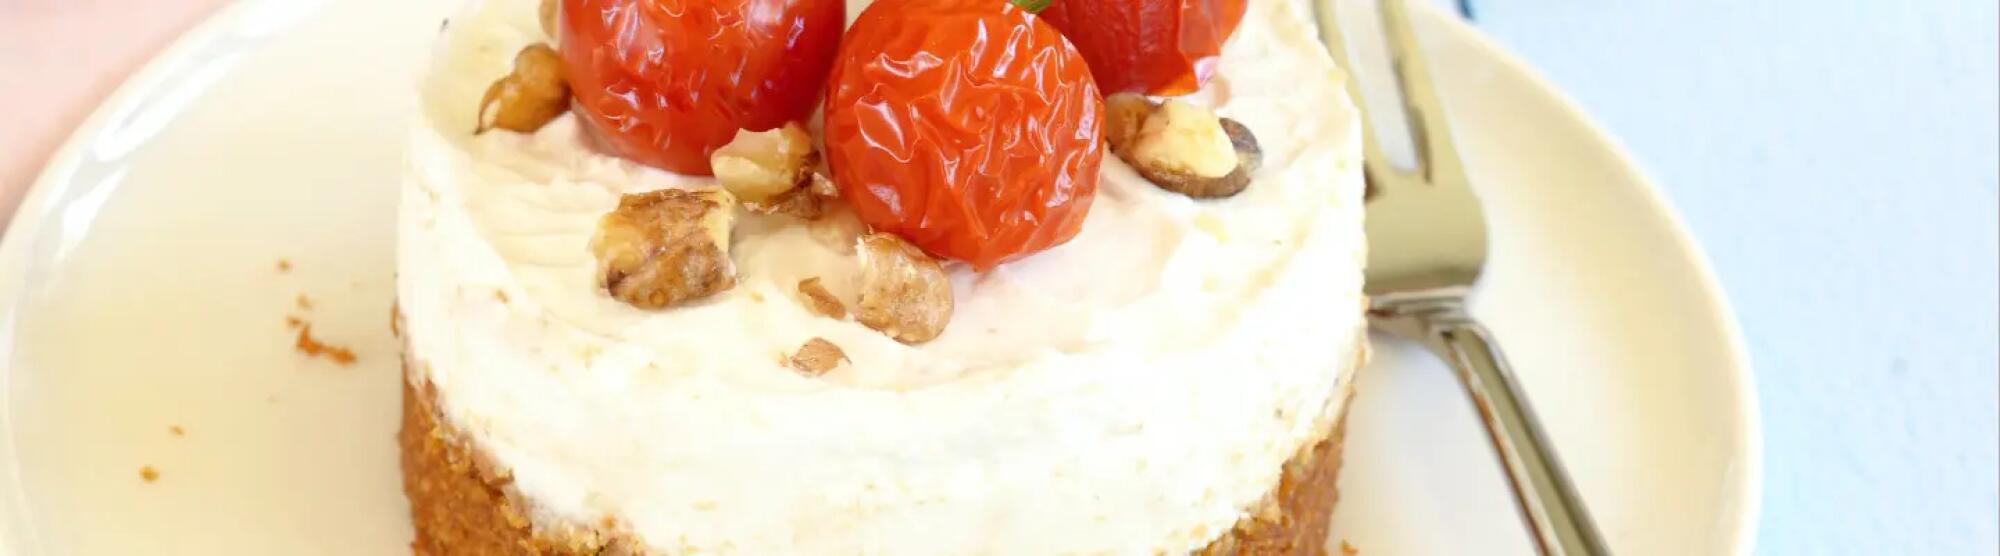 Recette : Cheesecake noix, tomates et chèvre frais